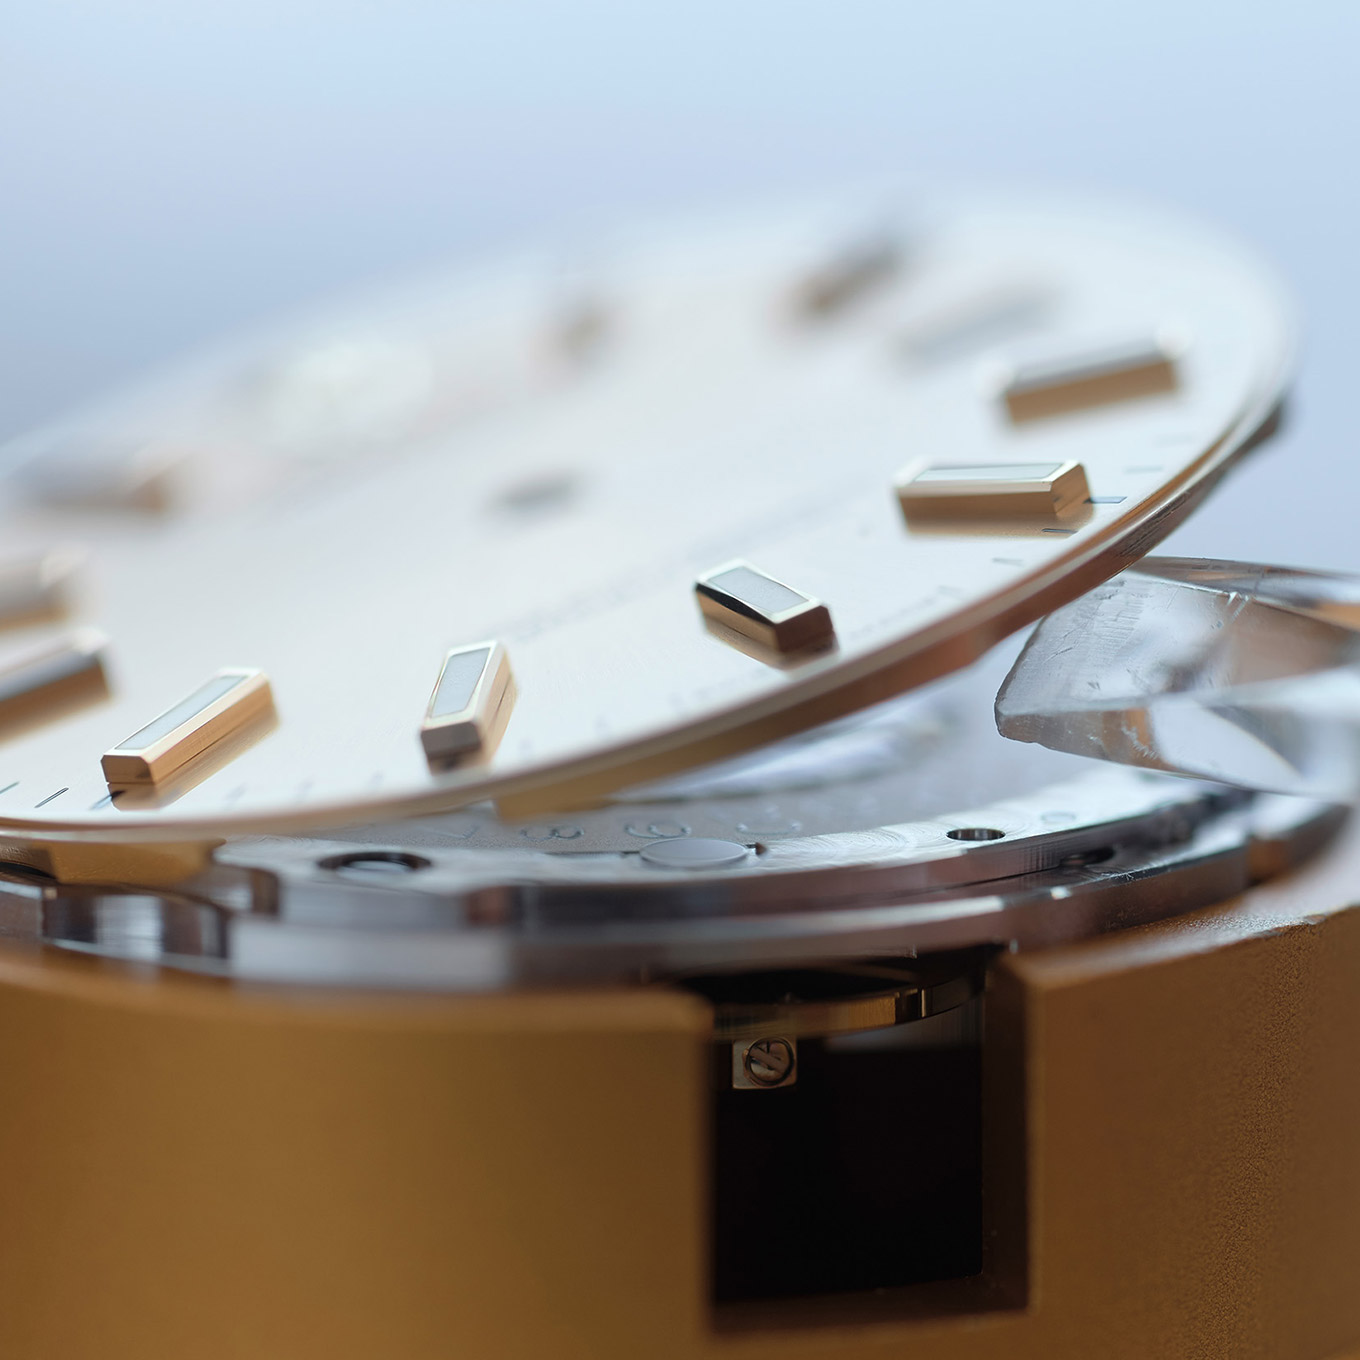 Vorsichtiges Anheben des Zifferblatts einer zerlegten Rolex Uhr